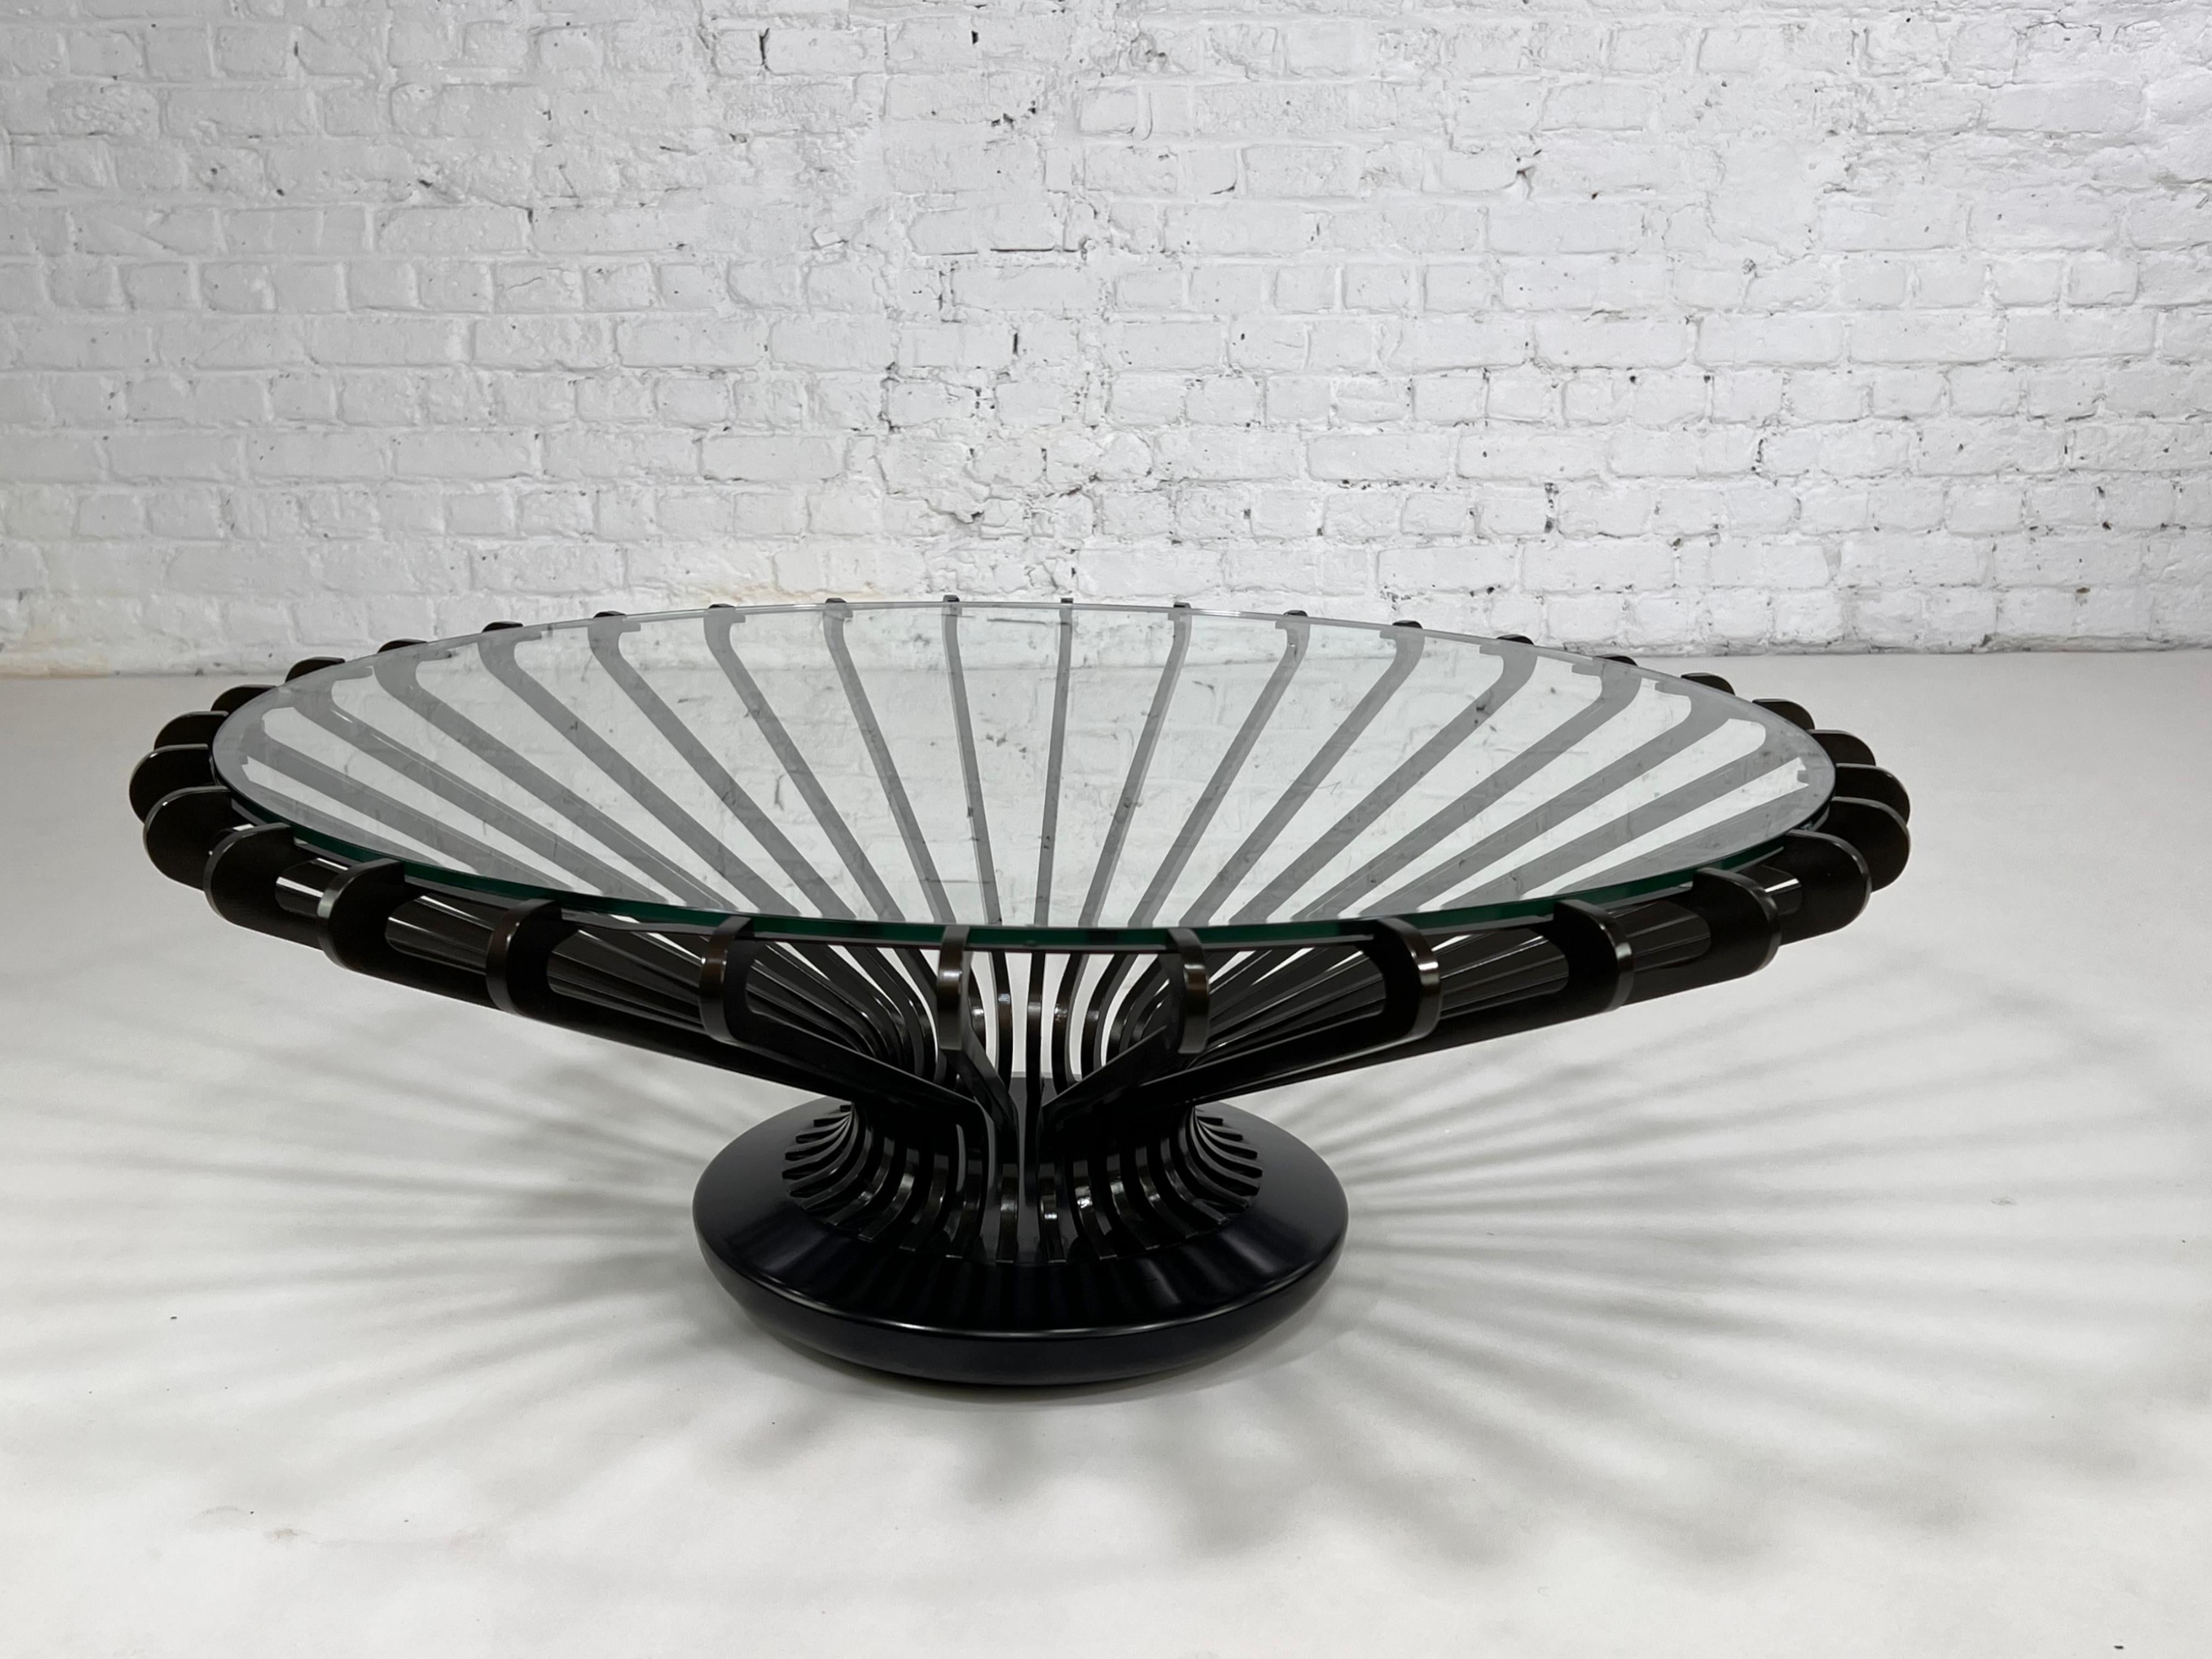 Runder italienischer Couchtisch im modernen Designstil aus Metall und Glas, bestehend aus einer schwarzen Metall- und Antennenstruktur mit einer runden Glasplatte.